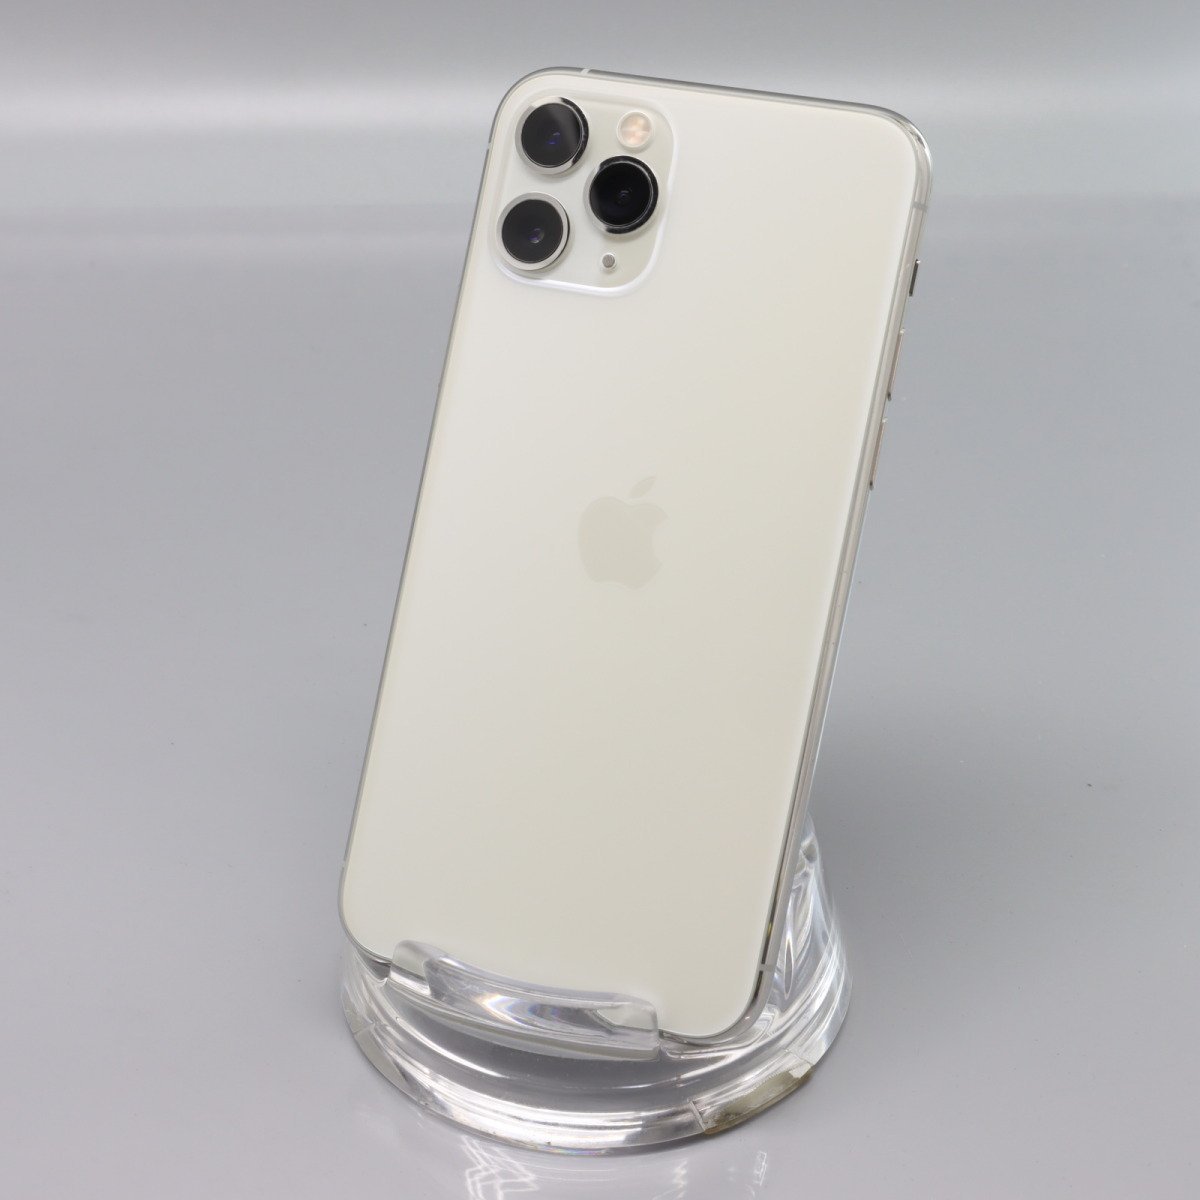 Apple iPhone11 Pro 256GB Silver A2215 MWC82J/A バッテリ90% ■ドコモ★Joshin5526【1円開始・送料無料】